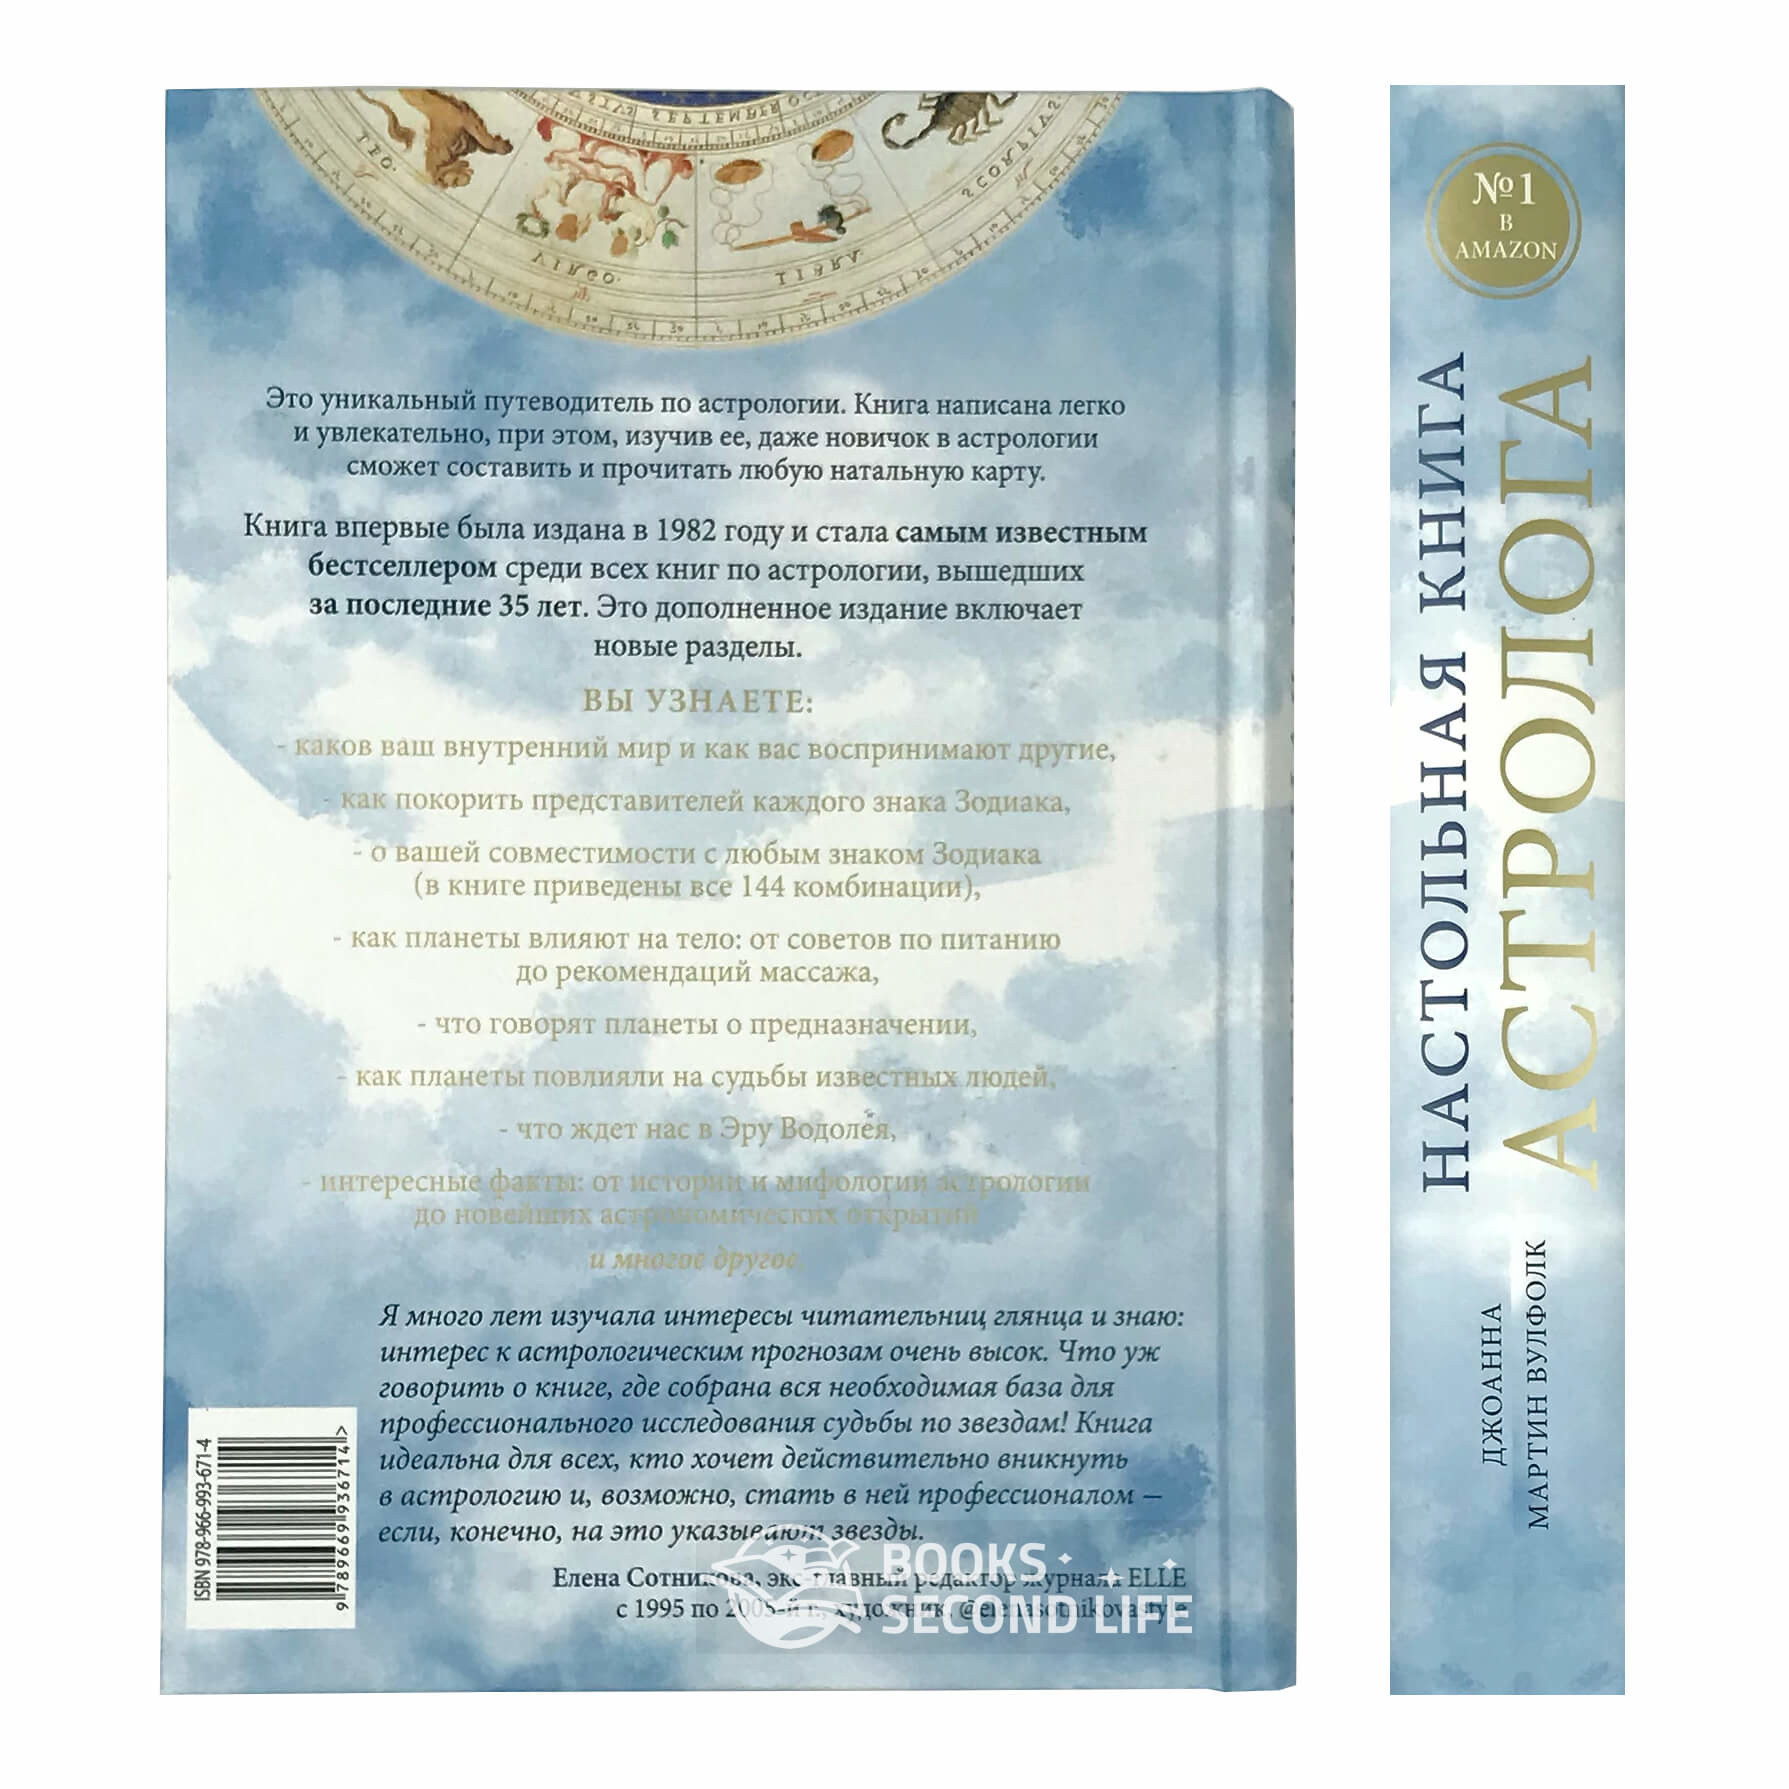 Настольная книга астролога. Вся астрология в одной книге - от простого к сложному (2-е издание). Автор — Джоанна Мартин Вулфолк. 